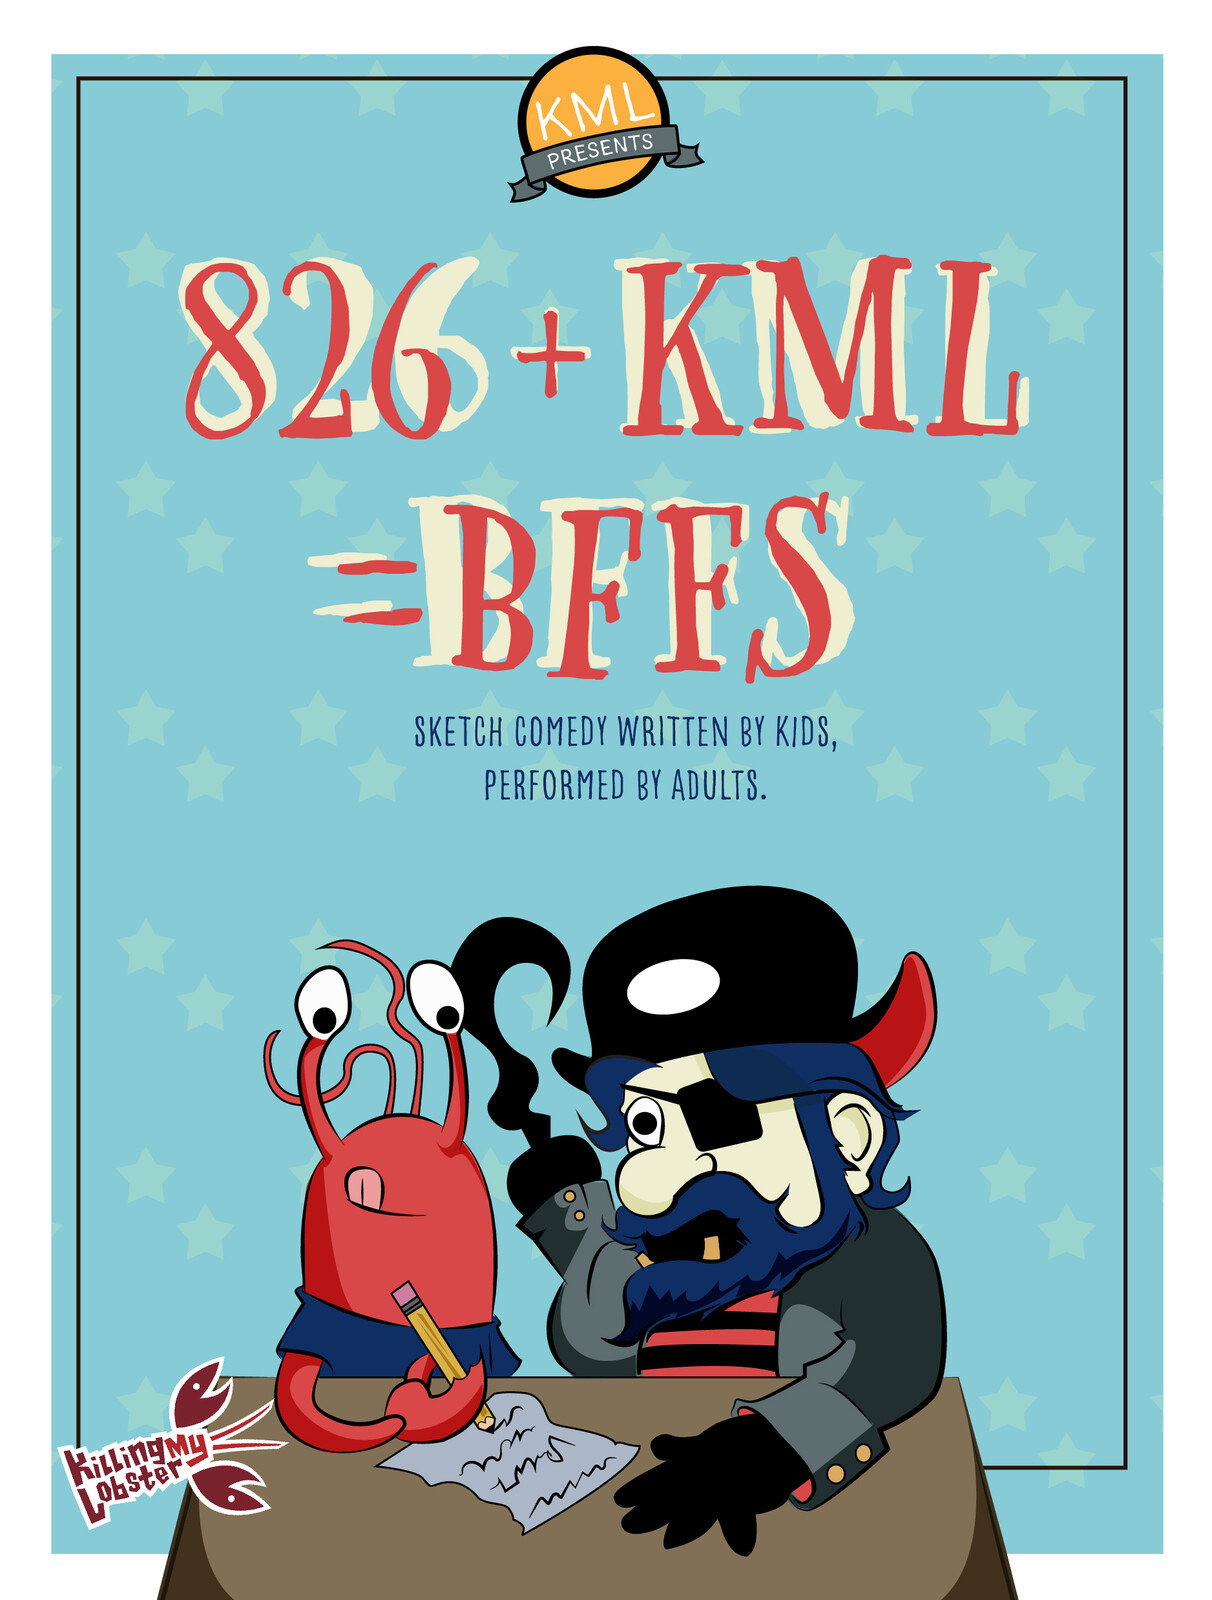 KML 2019 - 826+KML=BFFs